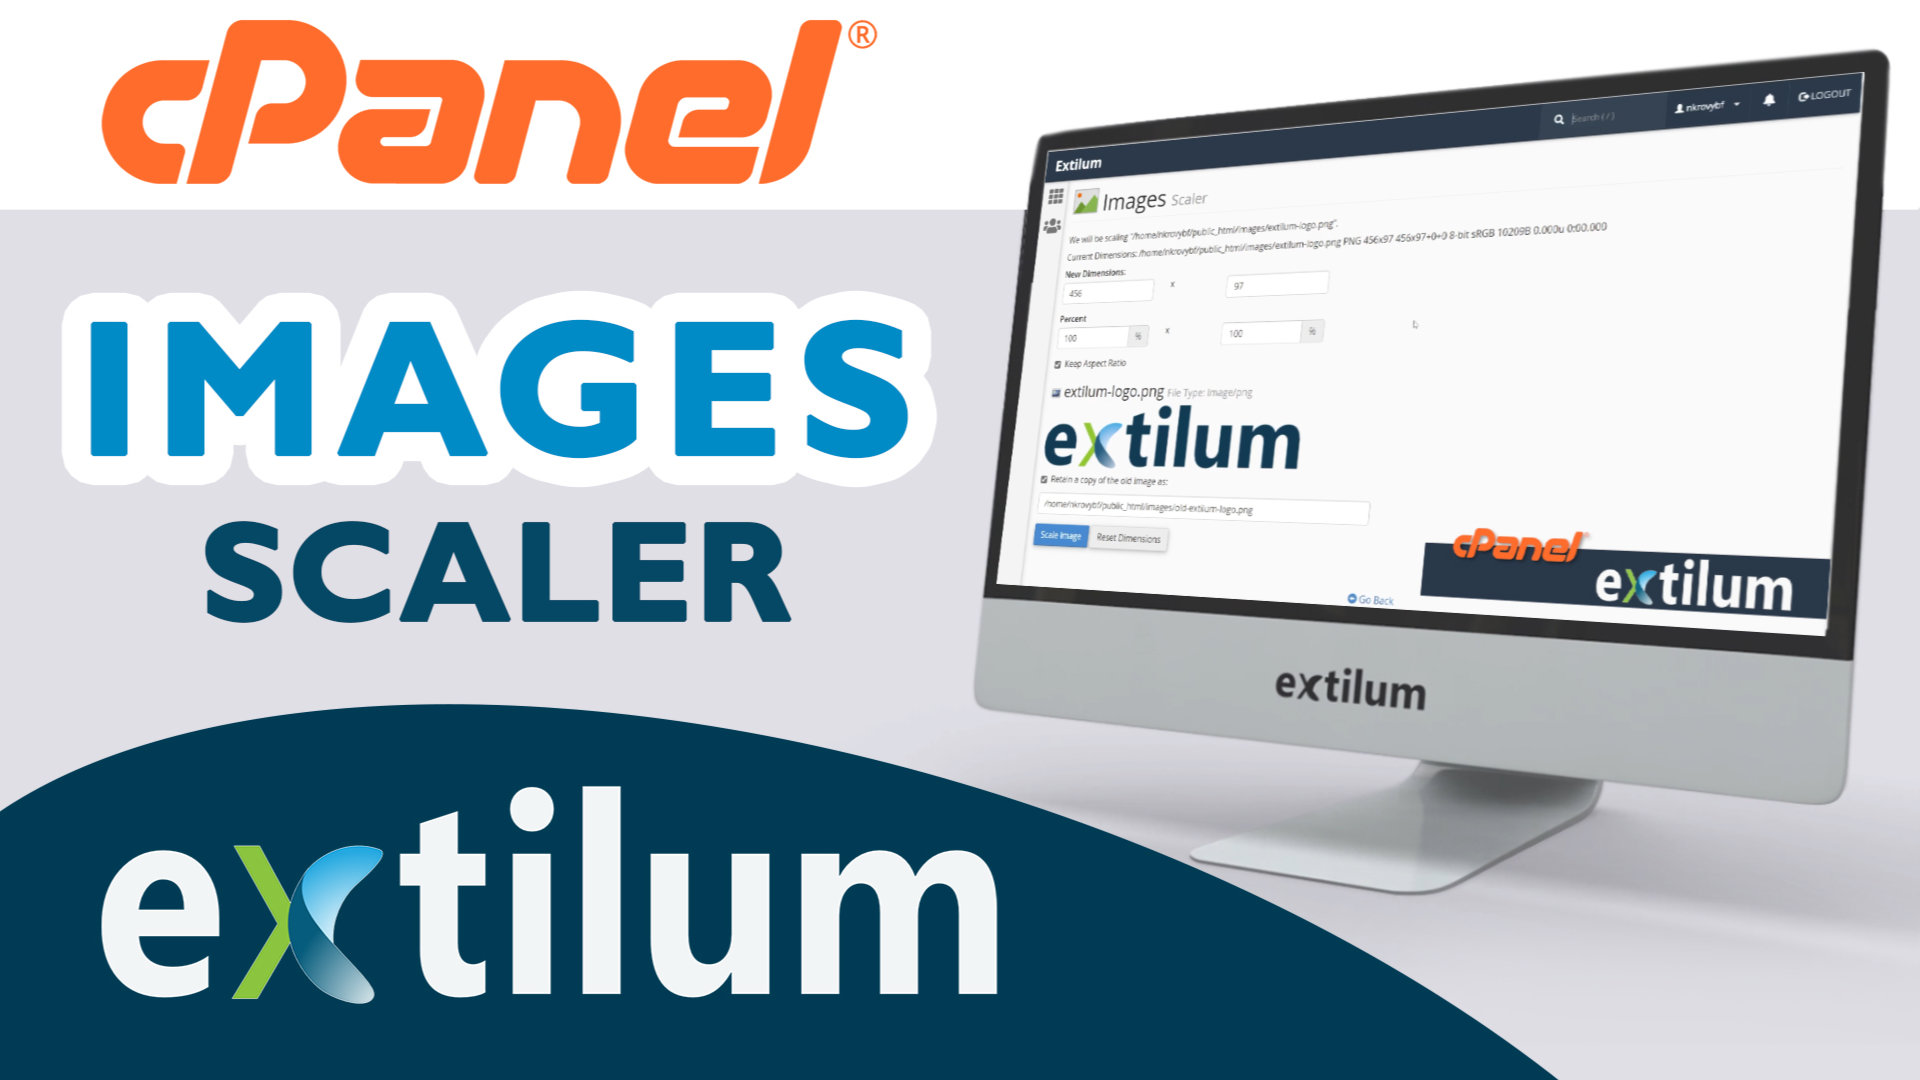 Extilum cpanel - images scaler